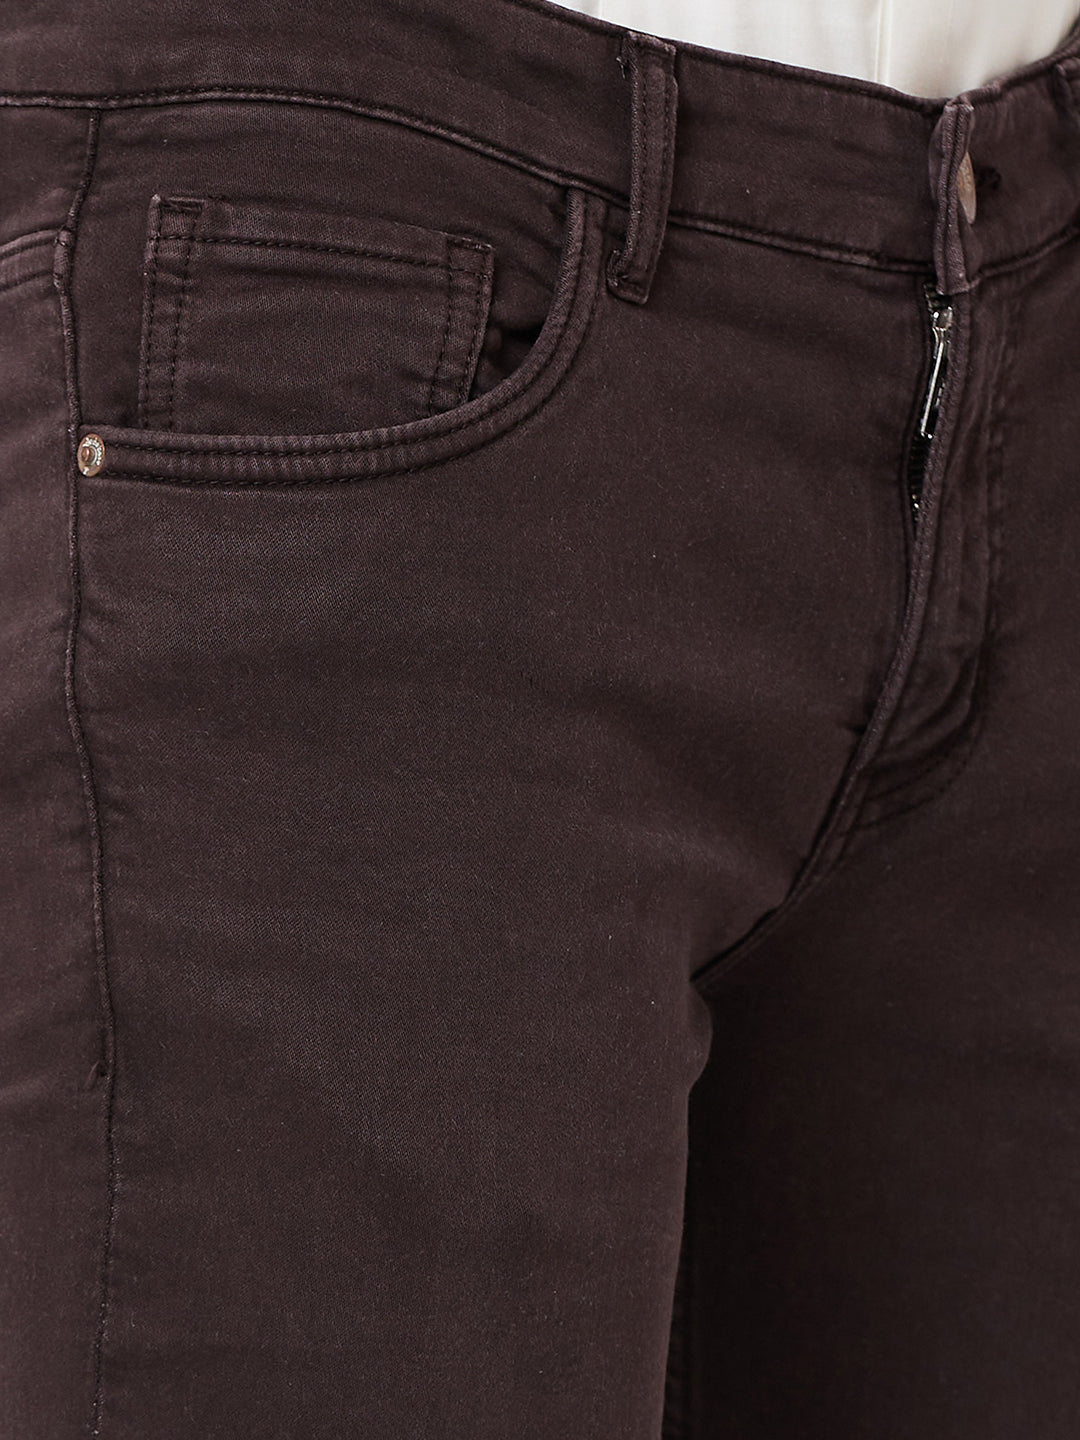 Korean Men Jeans Straight Male Dark Brown Denim Pants Harajuku Man  Streetwear Trousers Loose Casual Denim Trouser Baggy Pant - AliExpress